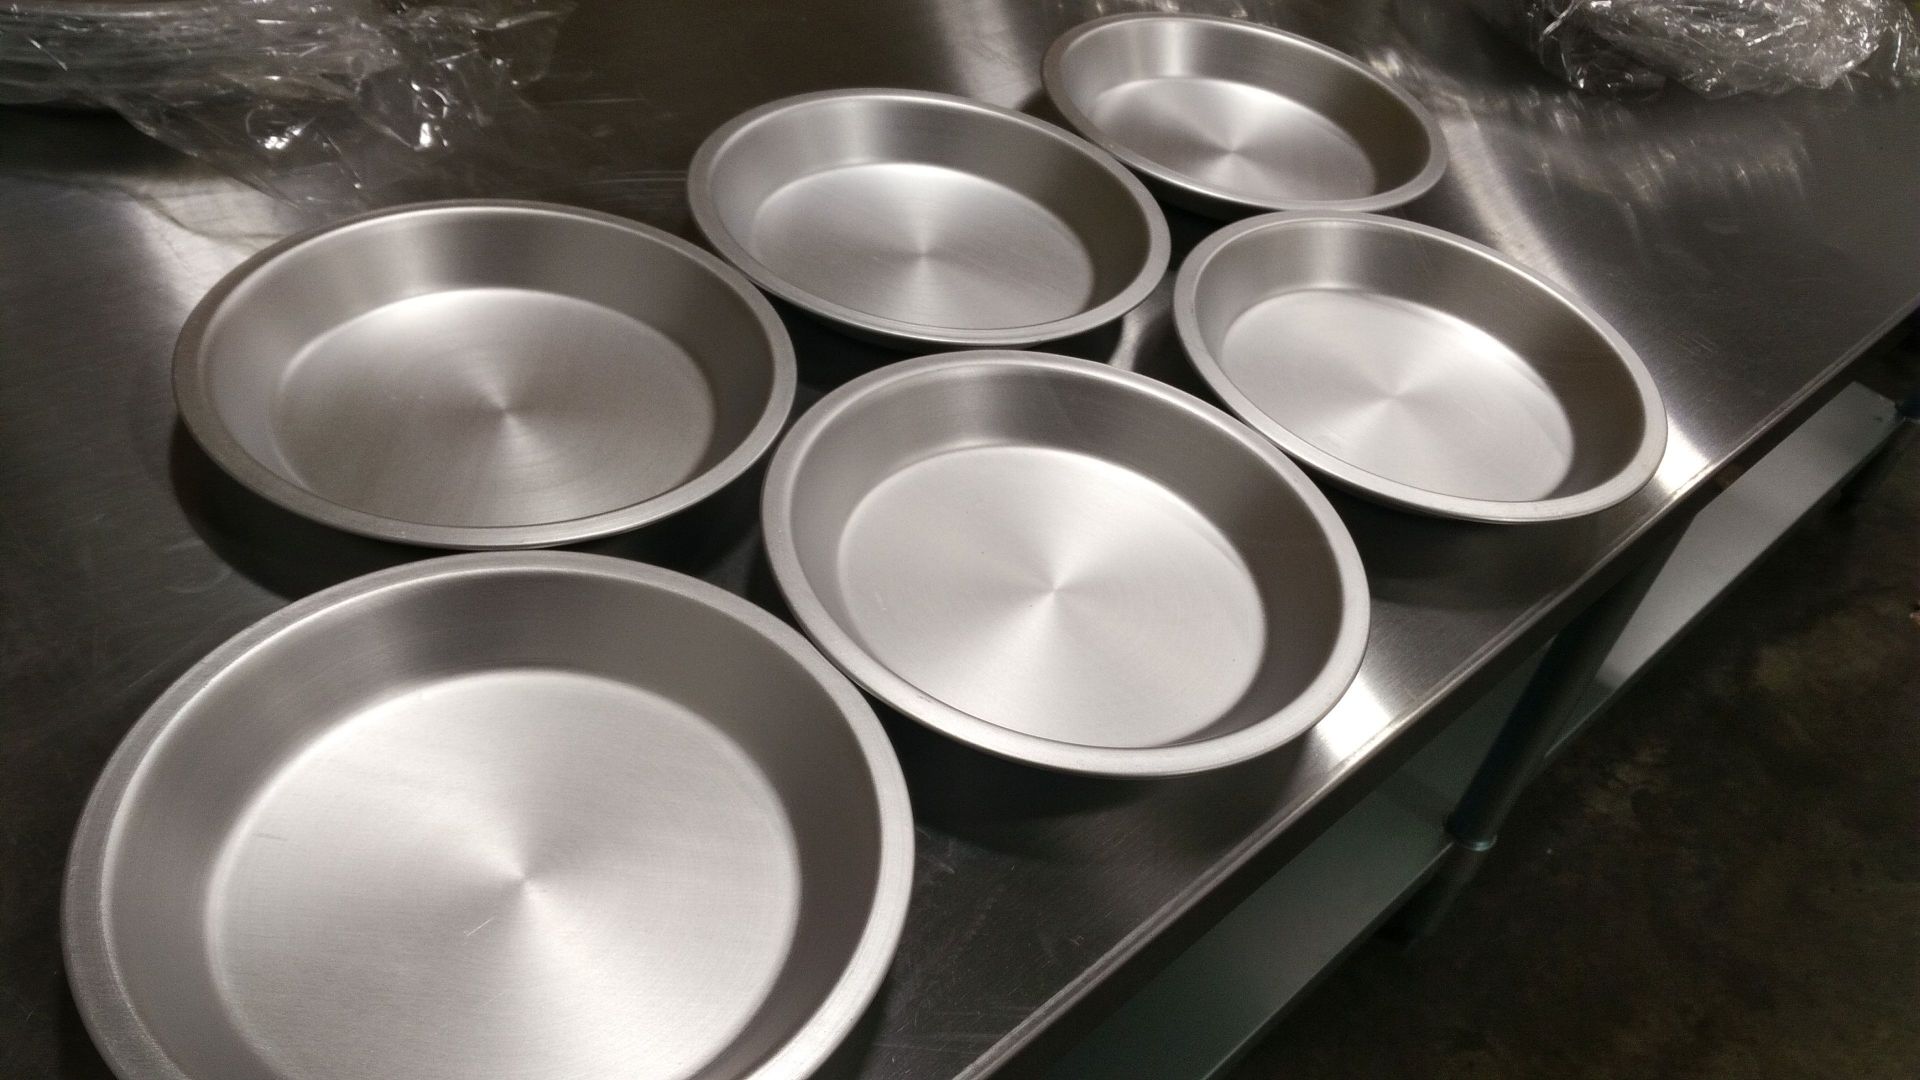 7" x 1" Aluminum Pie Plates - Lot of 6 - Image 2 of 2